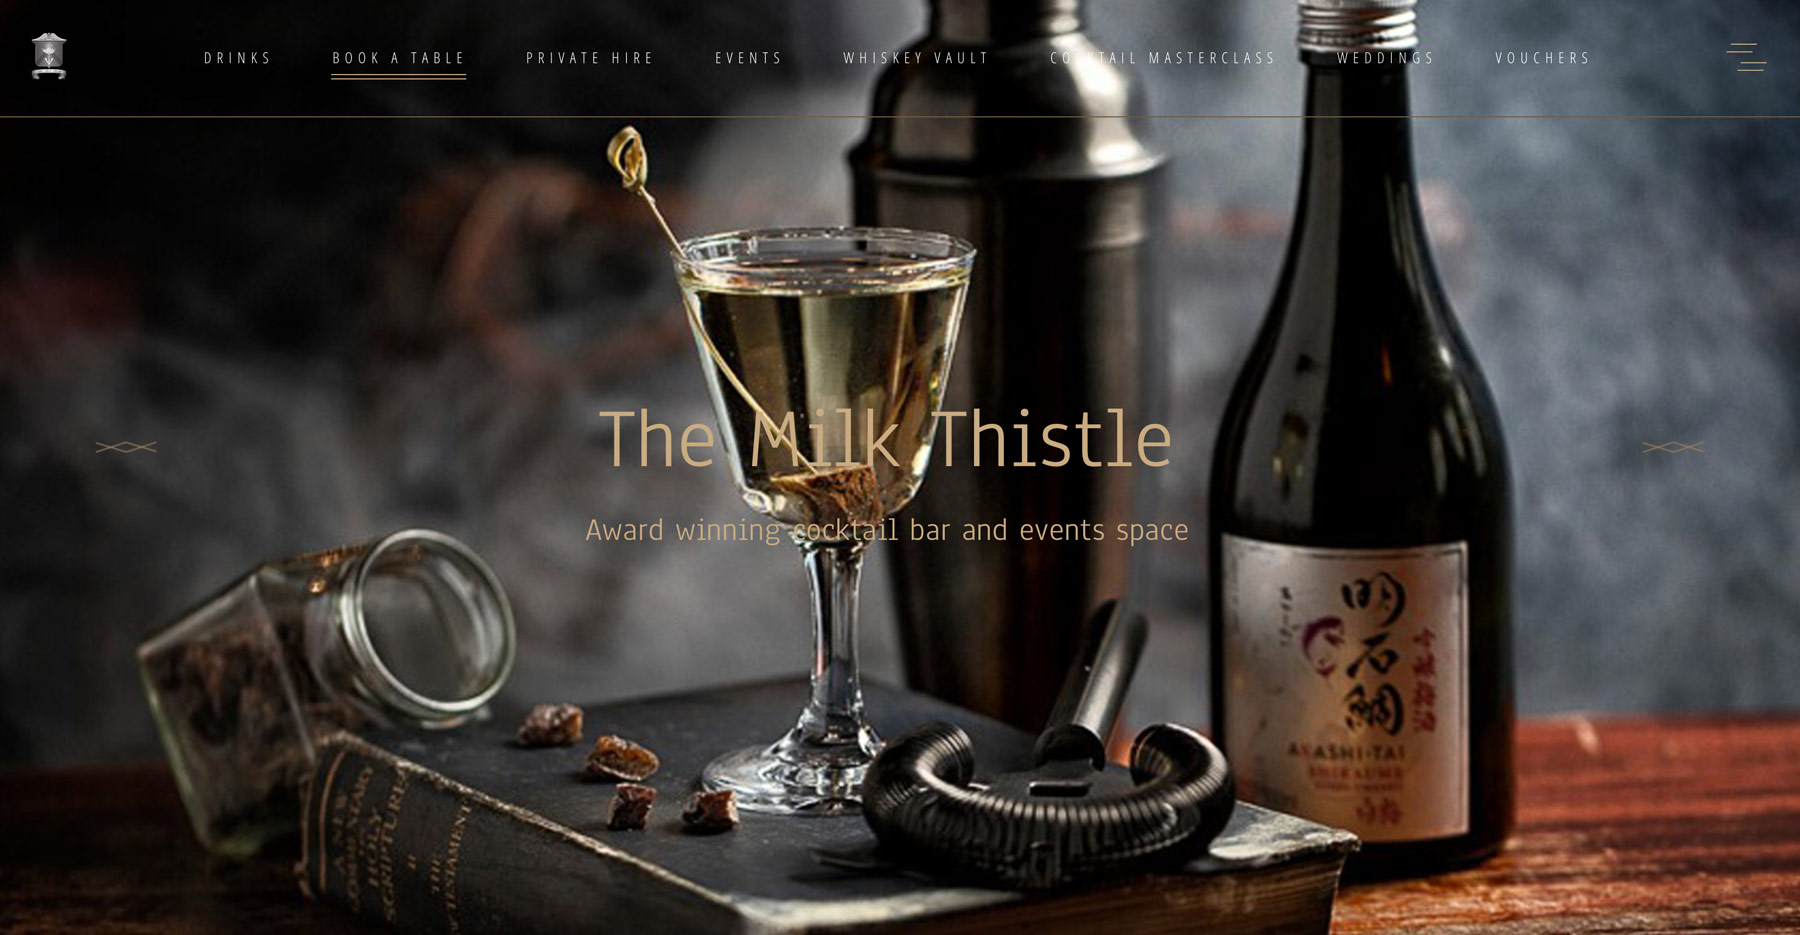 Eminente Rum Club at The Milk Thistle – Milk Thistle Bristol